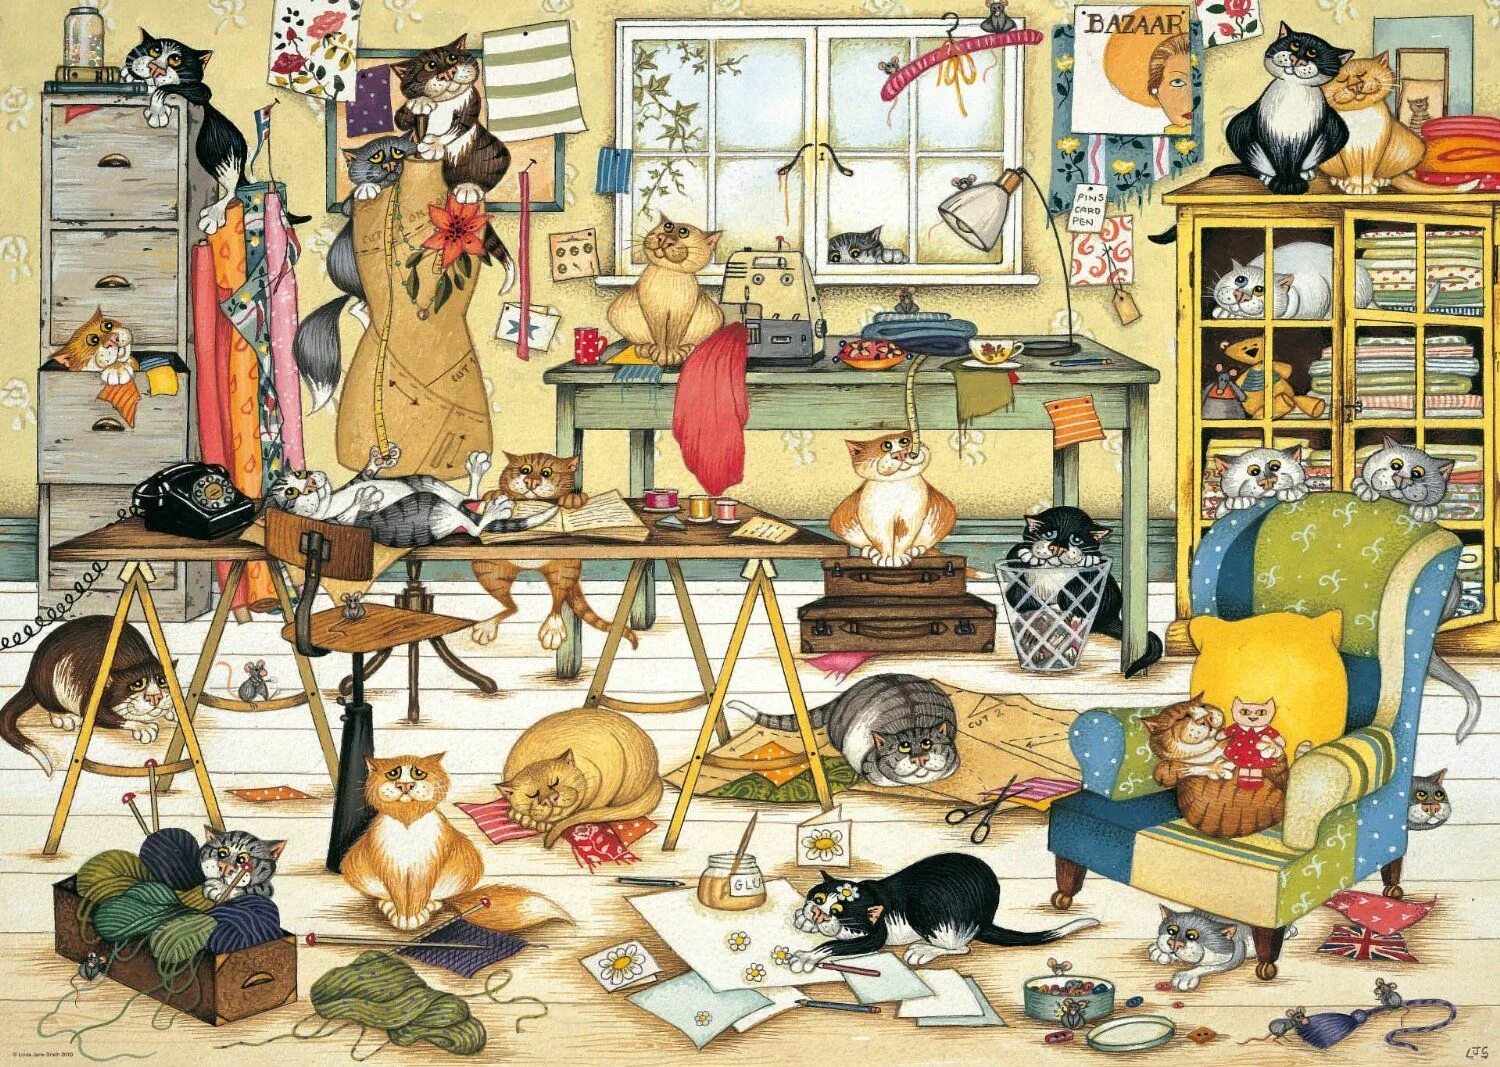 Задания найди кота. Комната с кучей вещей. Картины с множеством деталей. Беспорядок в комнате живопись. Найди вещи на картинке.